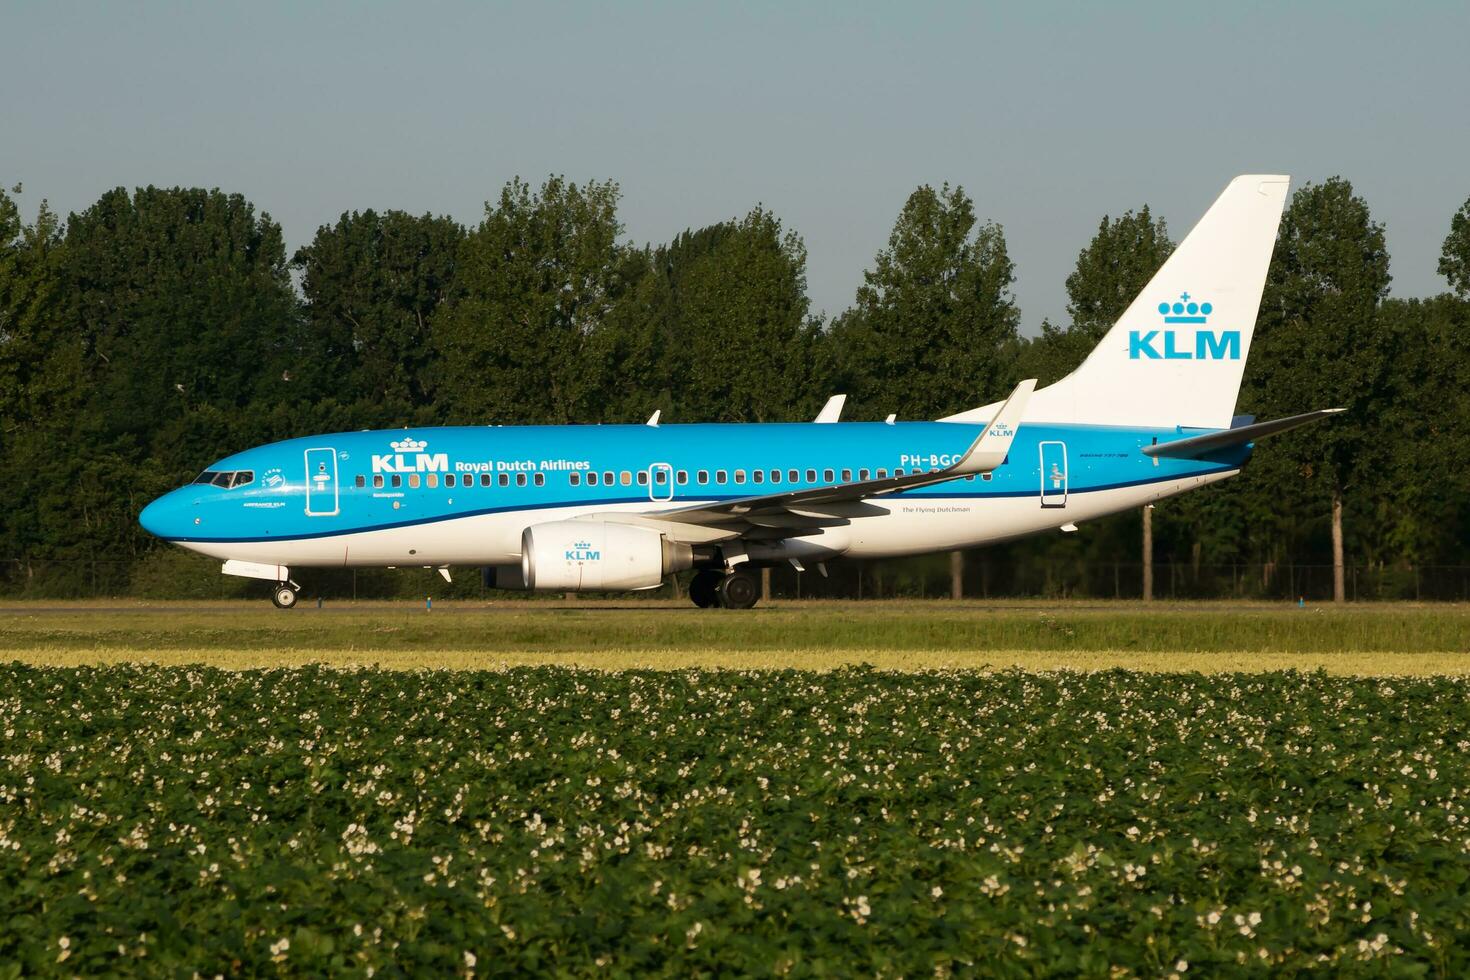 klm Royal néerlandais compagnies aériennes Boeing 737-700 ph-bgg passager avion roulage à Amsterdam Schipol aéroport photo